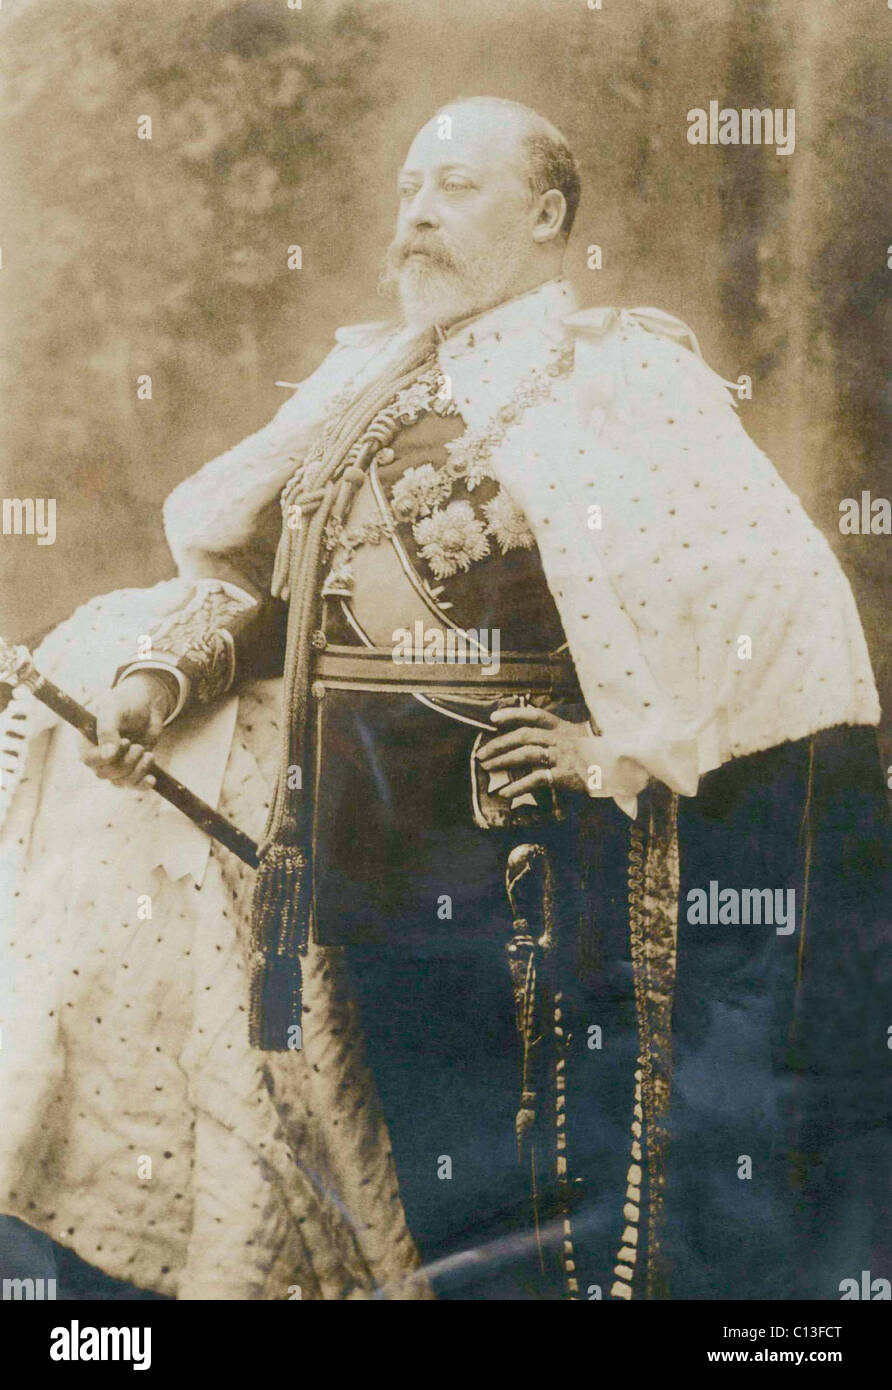 British Royalty. British King Edward VII, circa 1900s. Stock Photo